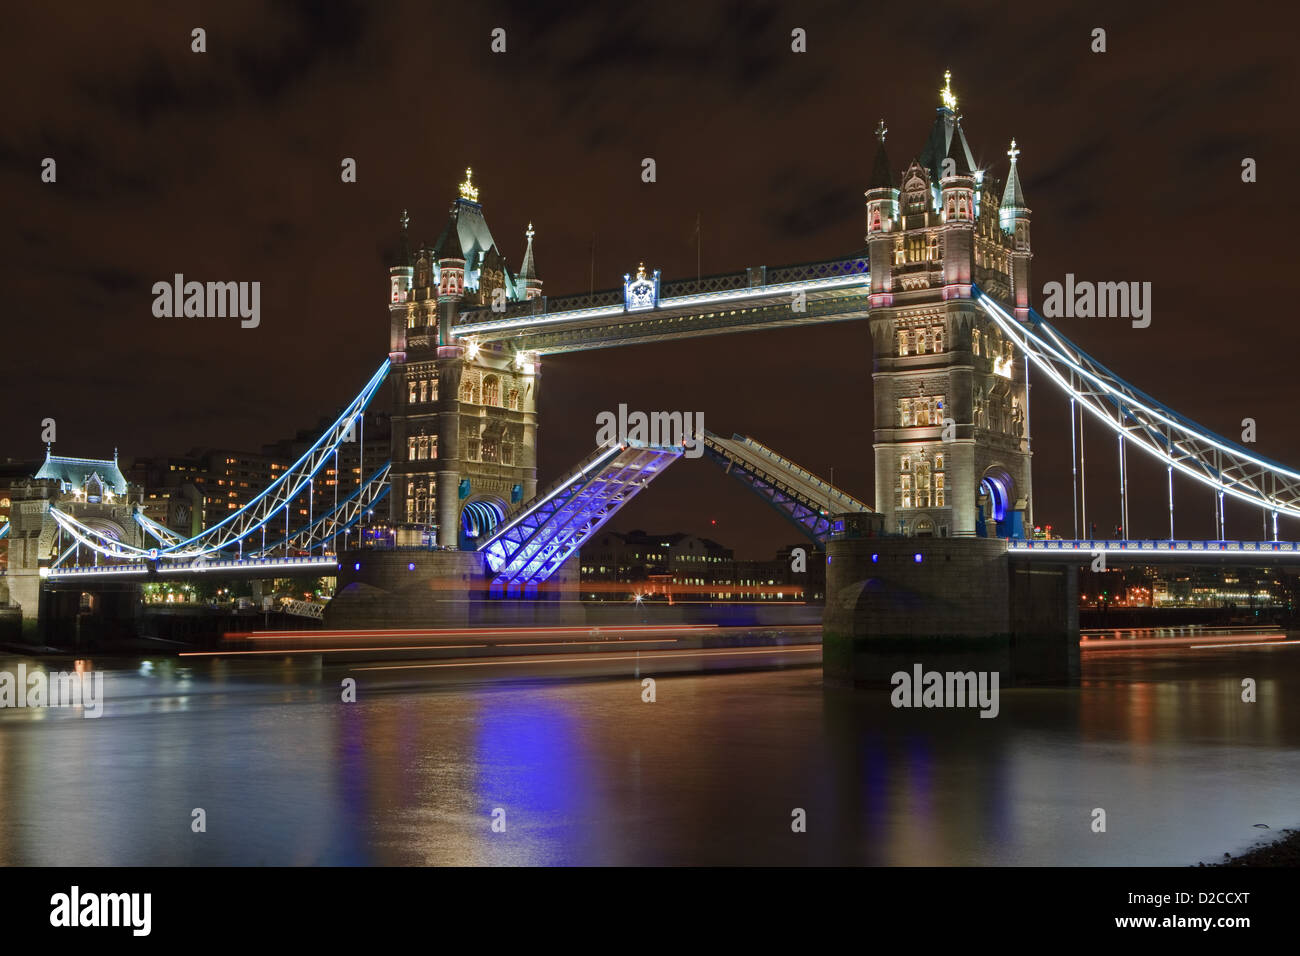 Dies ist ein Bild der Tower Bridge für den nautischen Verkehr passieren, können Sie die Lichtspuren eines Bootes sehen, wie es geht. Stockfoto